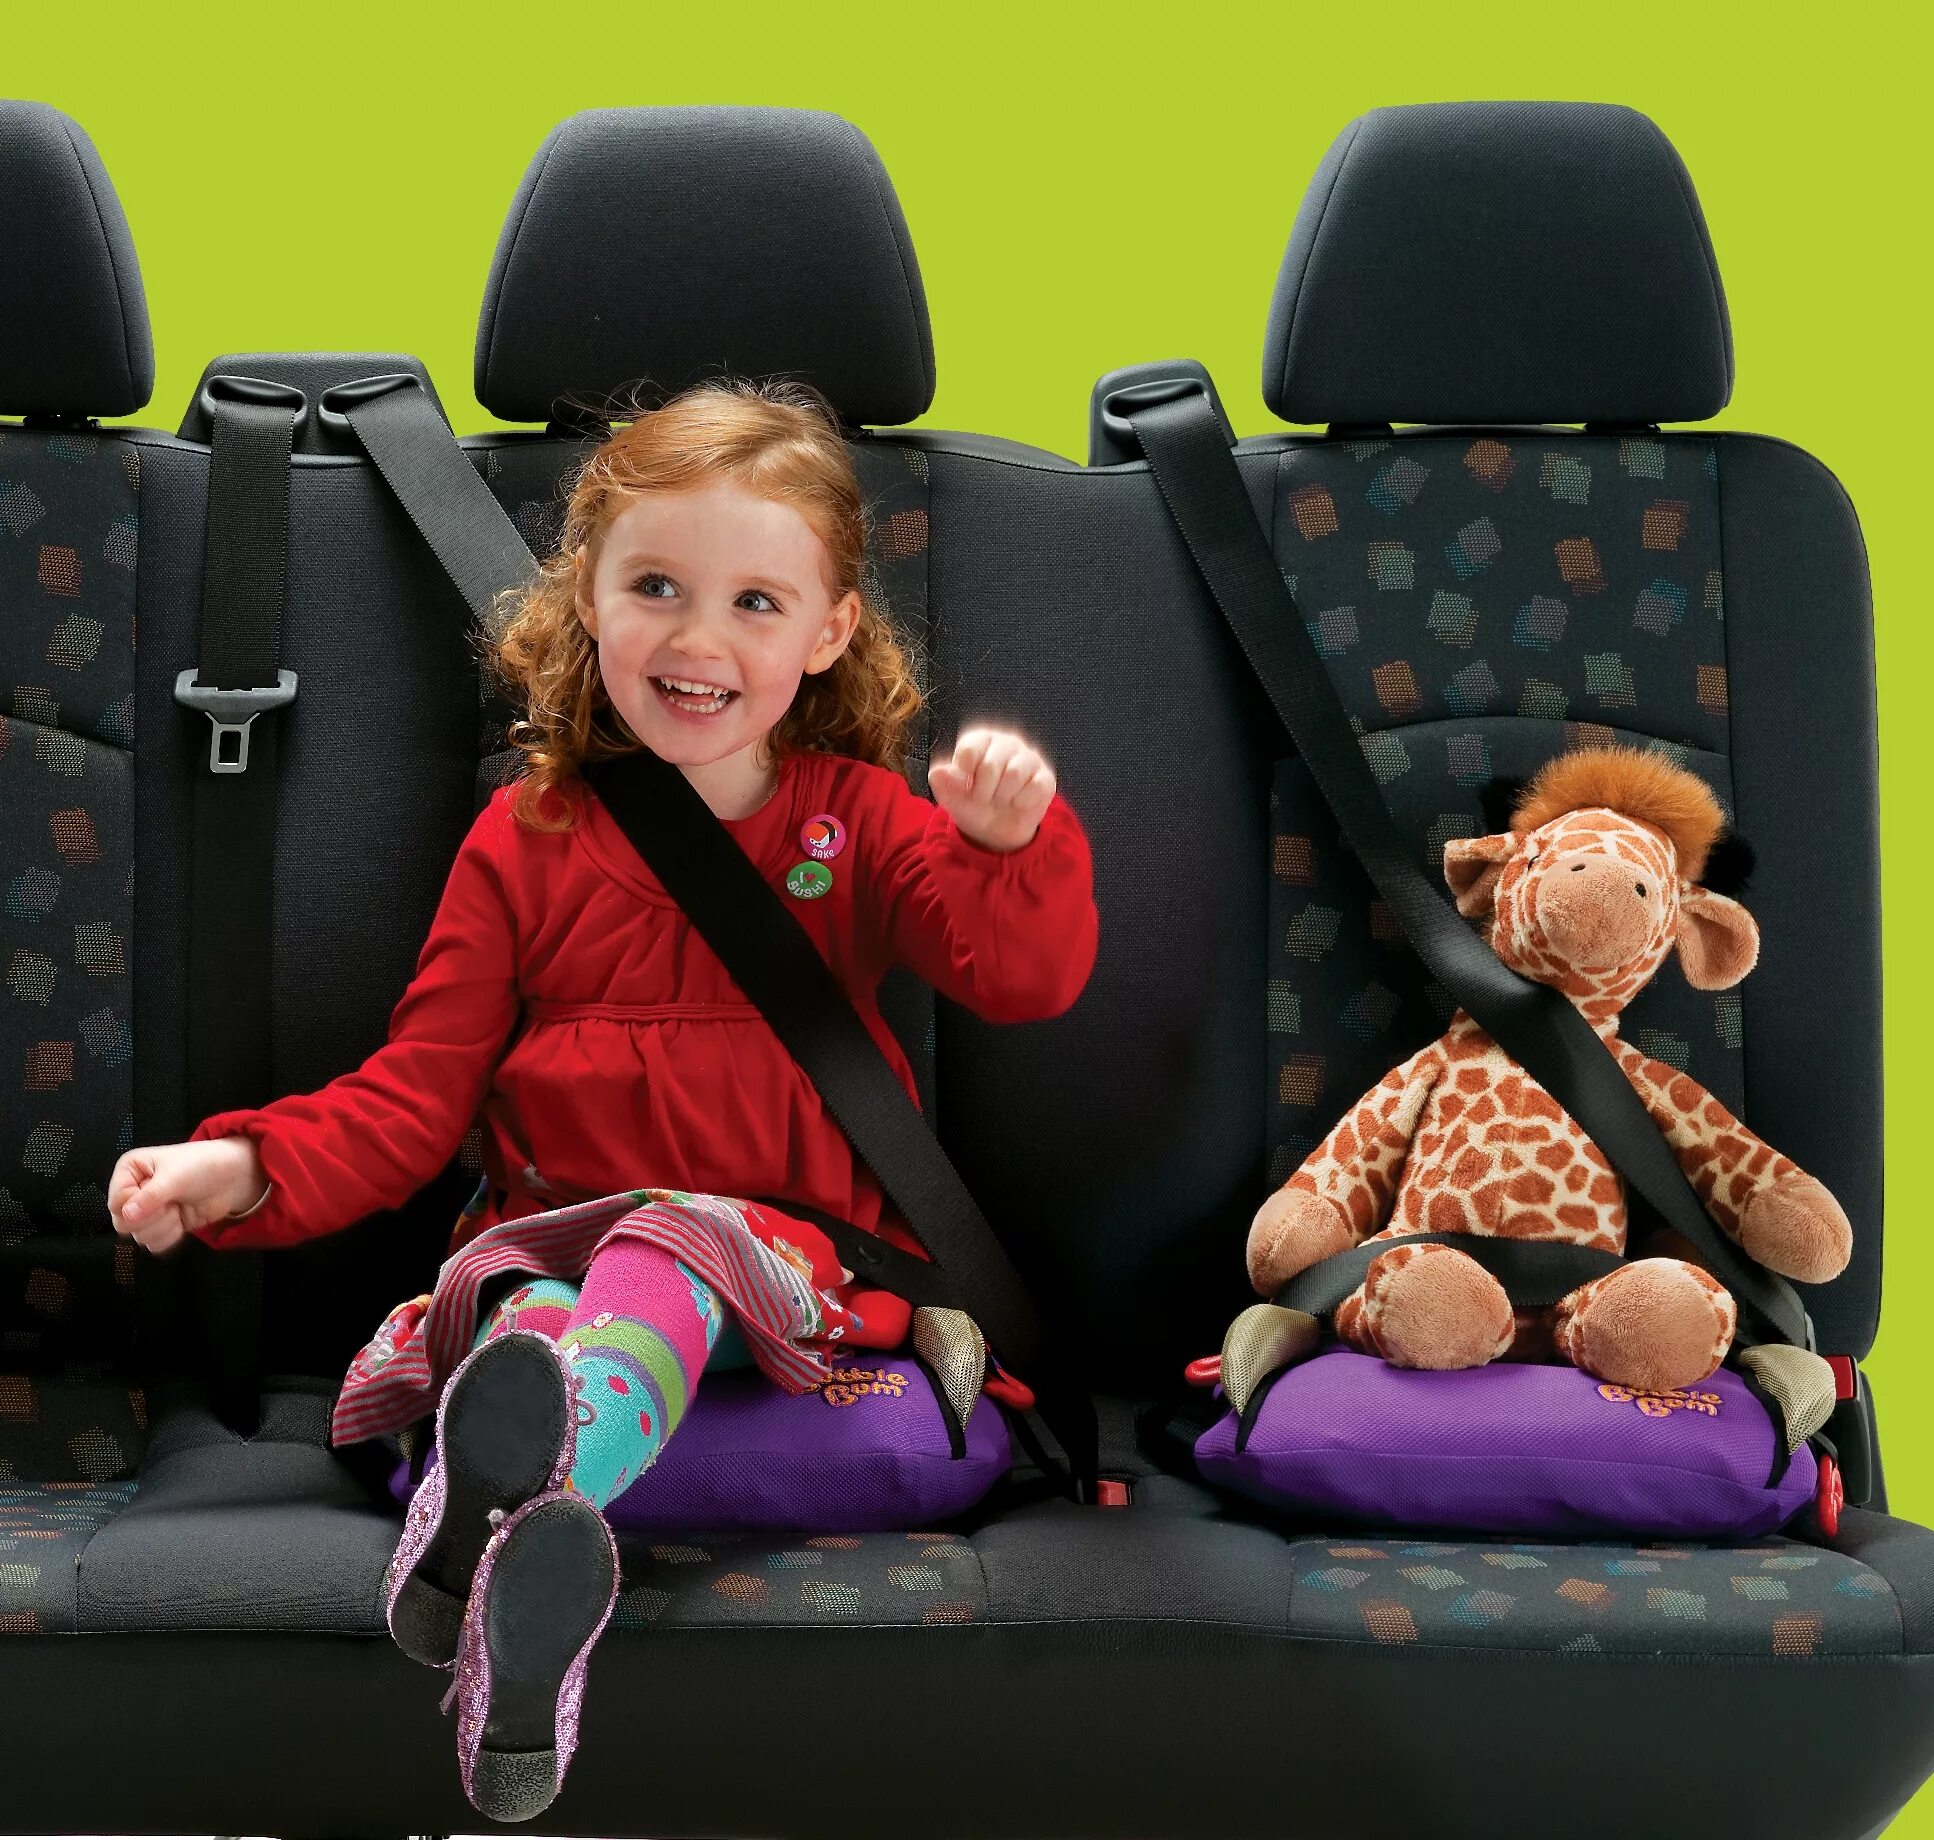 Сиденье для ребенка в машину. Детские ремни безопасности для автомобиля. Ребёнок в автомобиле пристёгнут. Кресло безопасности для детей. Можно возить ребенка без детского кресла